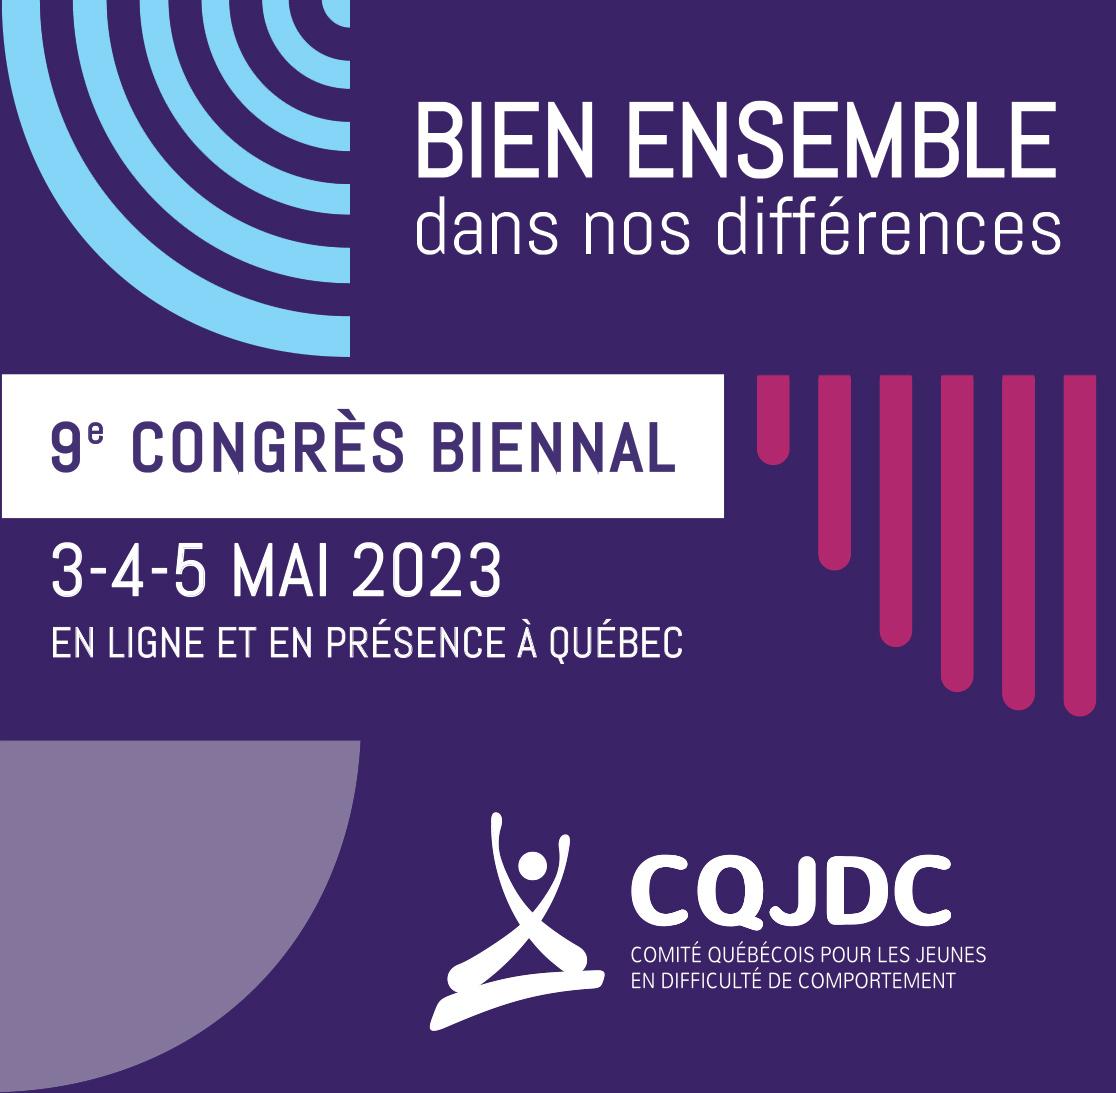 9e congrès biennal du CQJDC